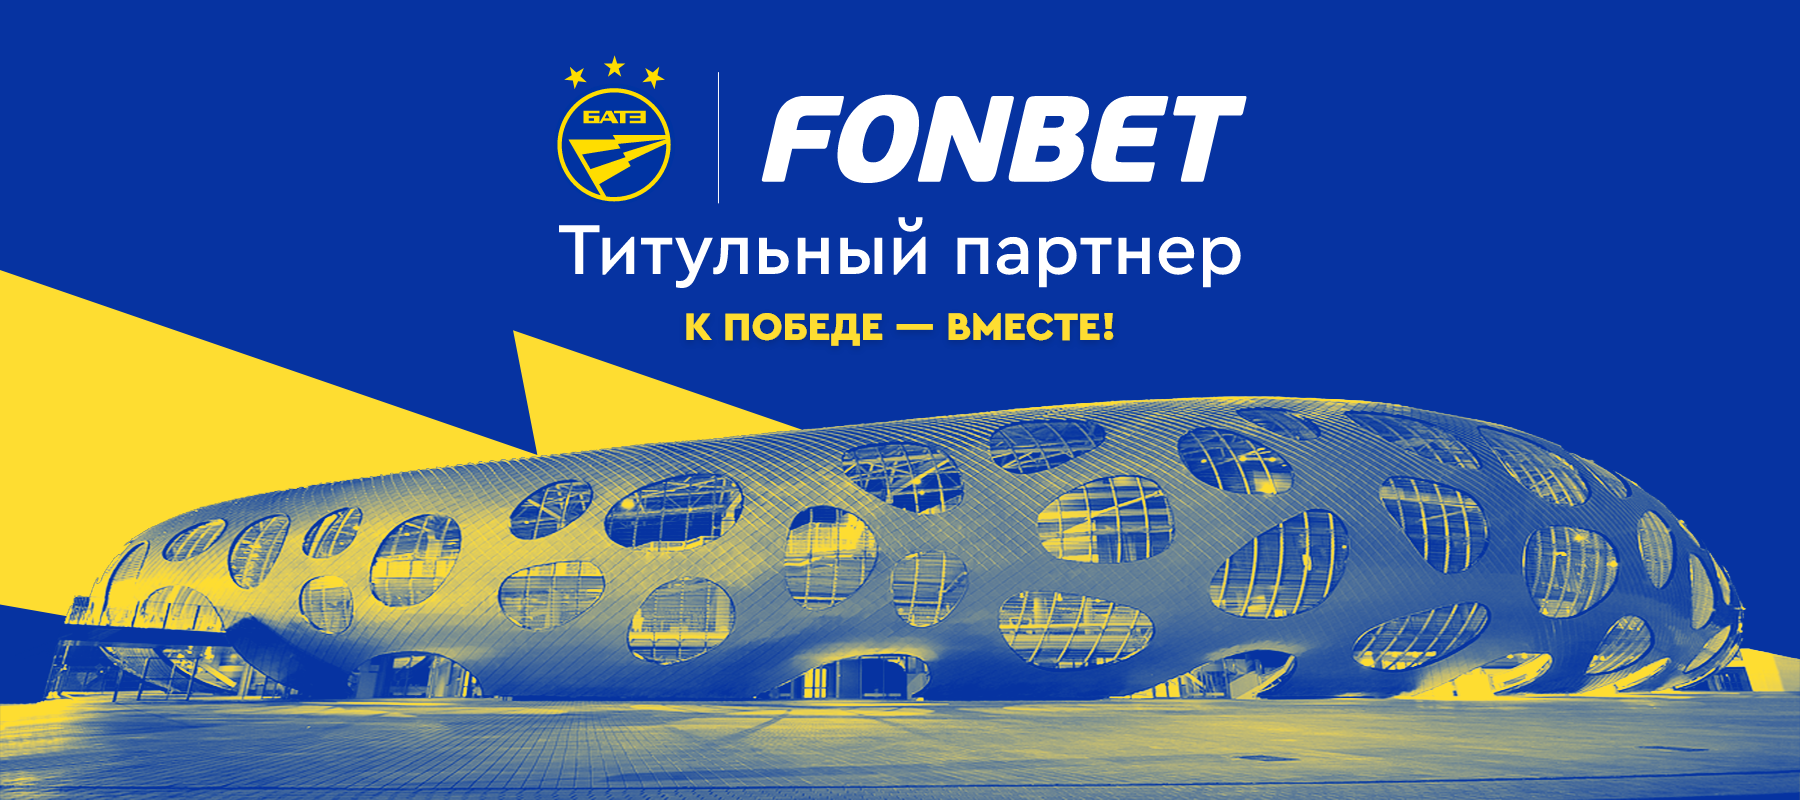 Fonbet стал титульным спонсором футбольного клуба БАТЭ